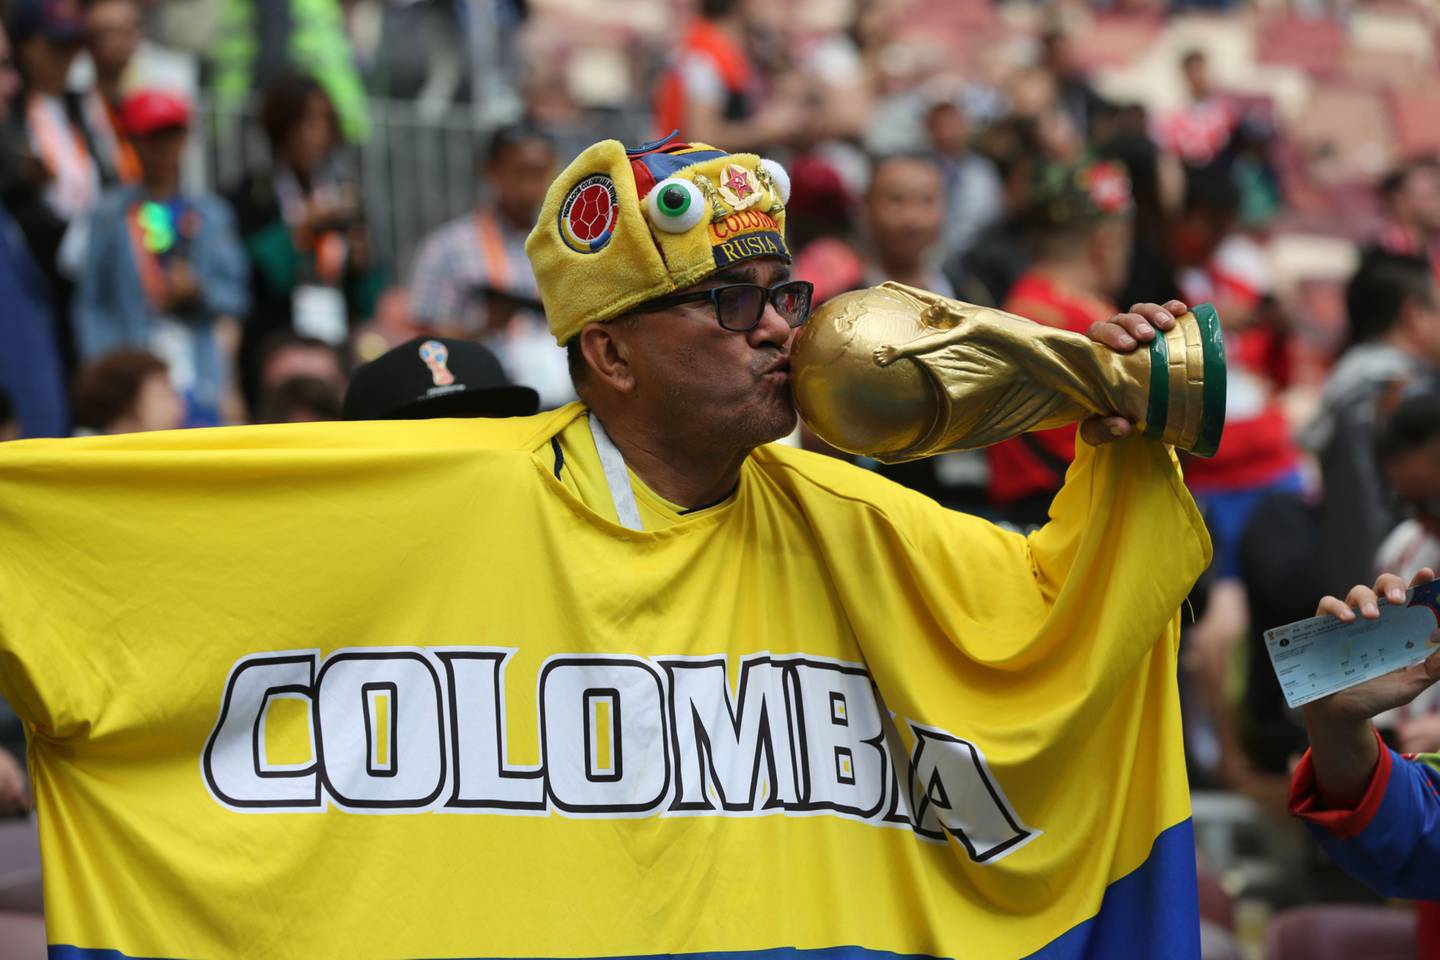 Un fanático del fútbol de Colombia besa una réplica del trofeo de la Copa Mundial durante la ceremonia de apertura de la Copa Mundial de la FIFA en el estadio Luzhniki en Moscú, Rusia, el jueves 14 de junio de 2018